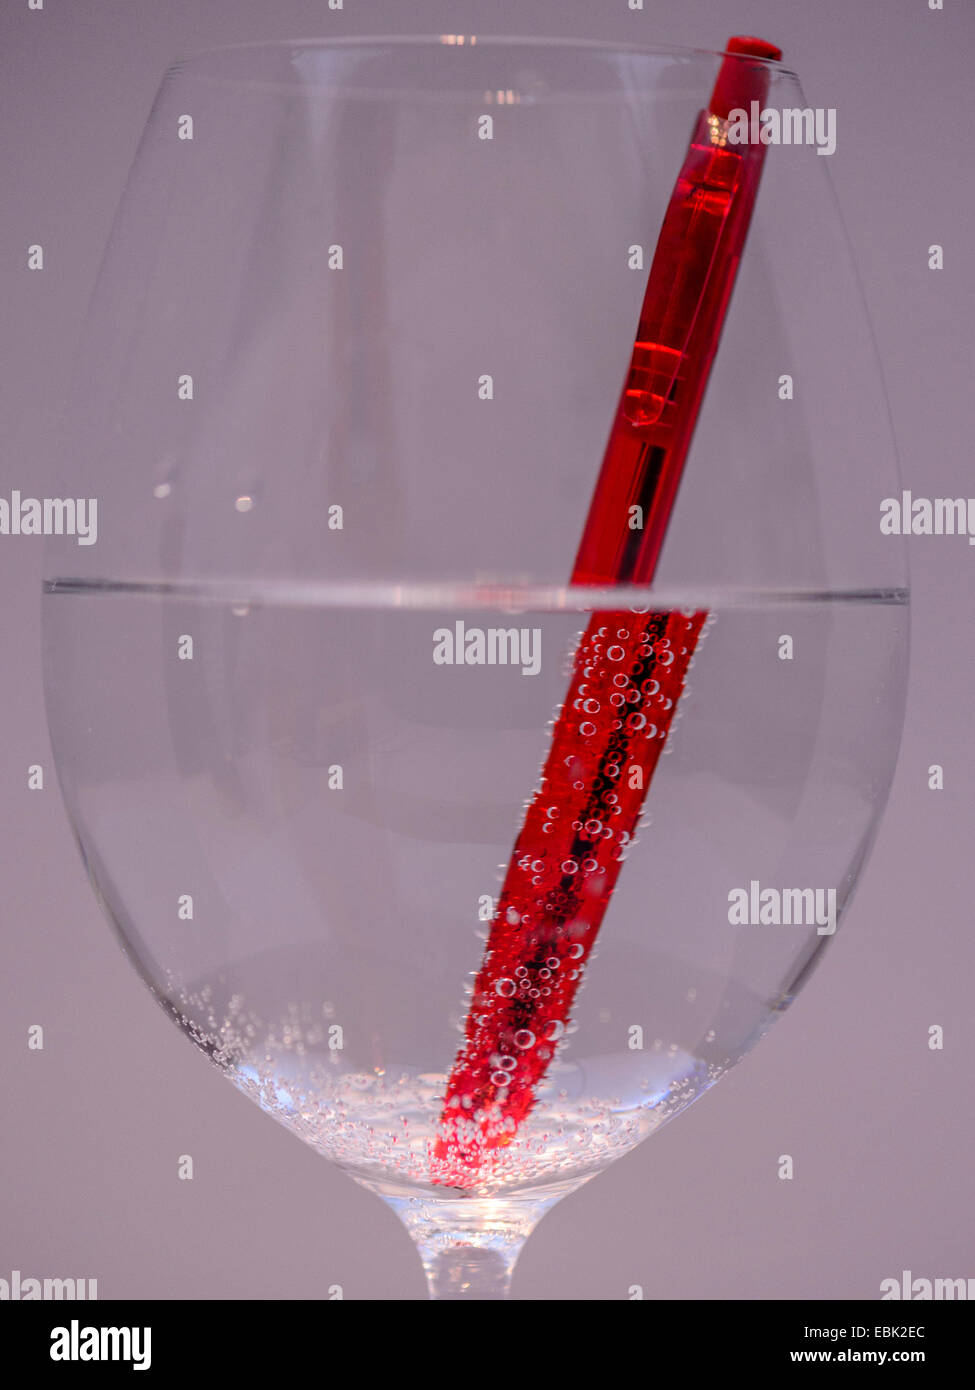 Studio macro immagine vibrante penna rossa metà immerso in un bicchiere da vino di acqua frizzante che mostra la diffrazione della penna nell'acqua. Foto Stock